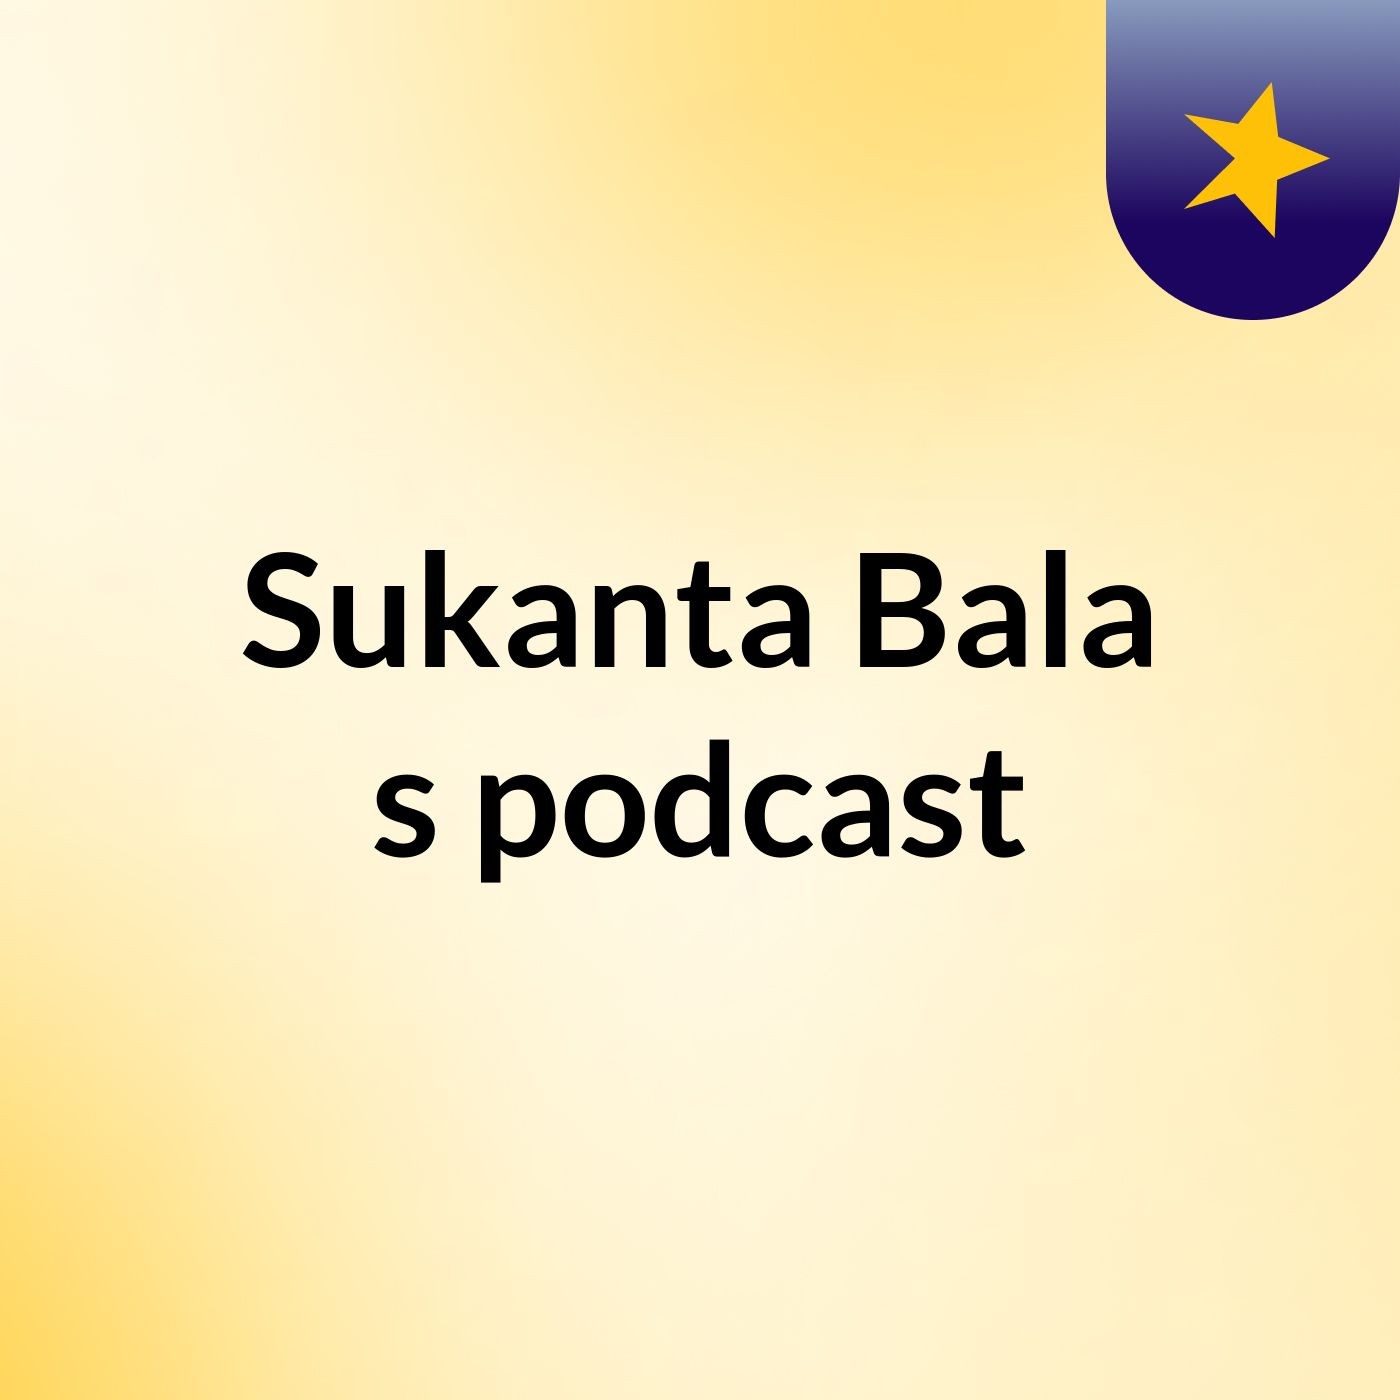 Sukanta Bala's podcast